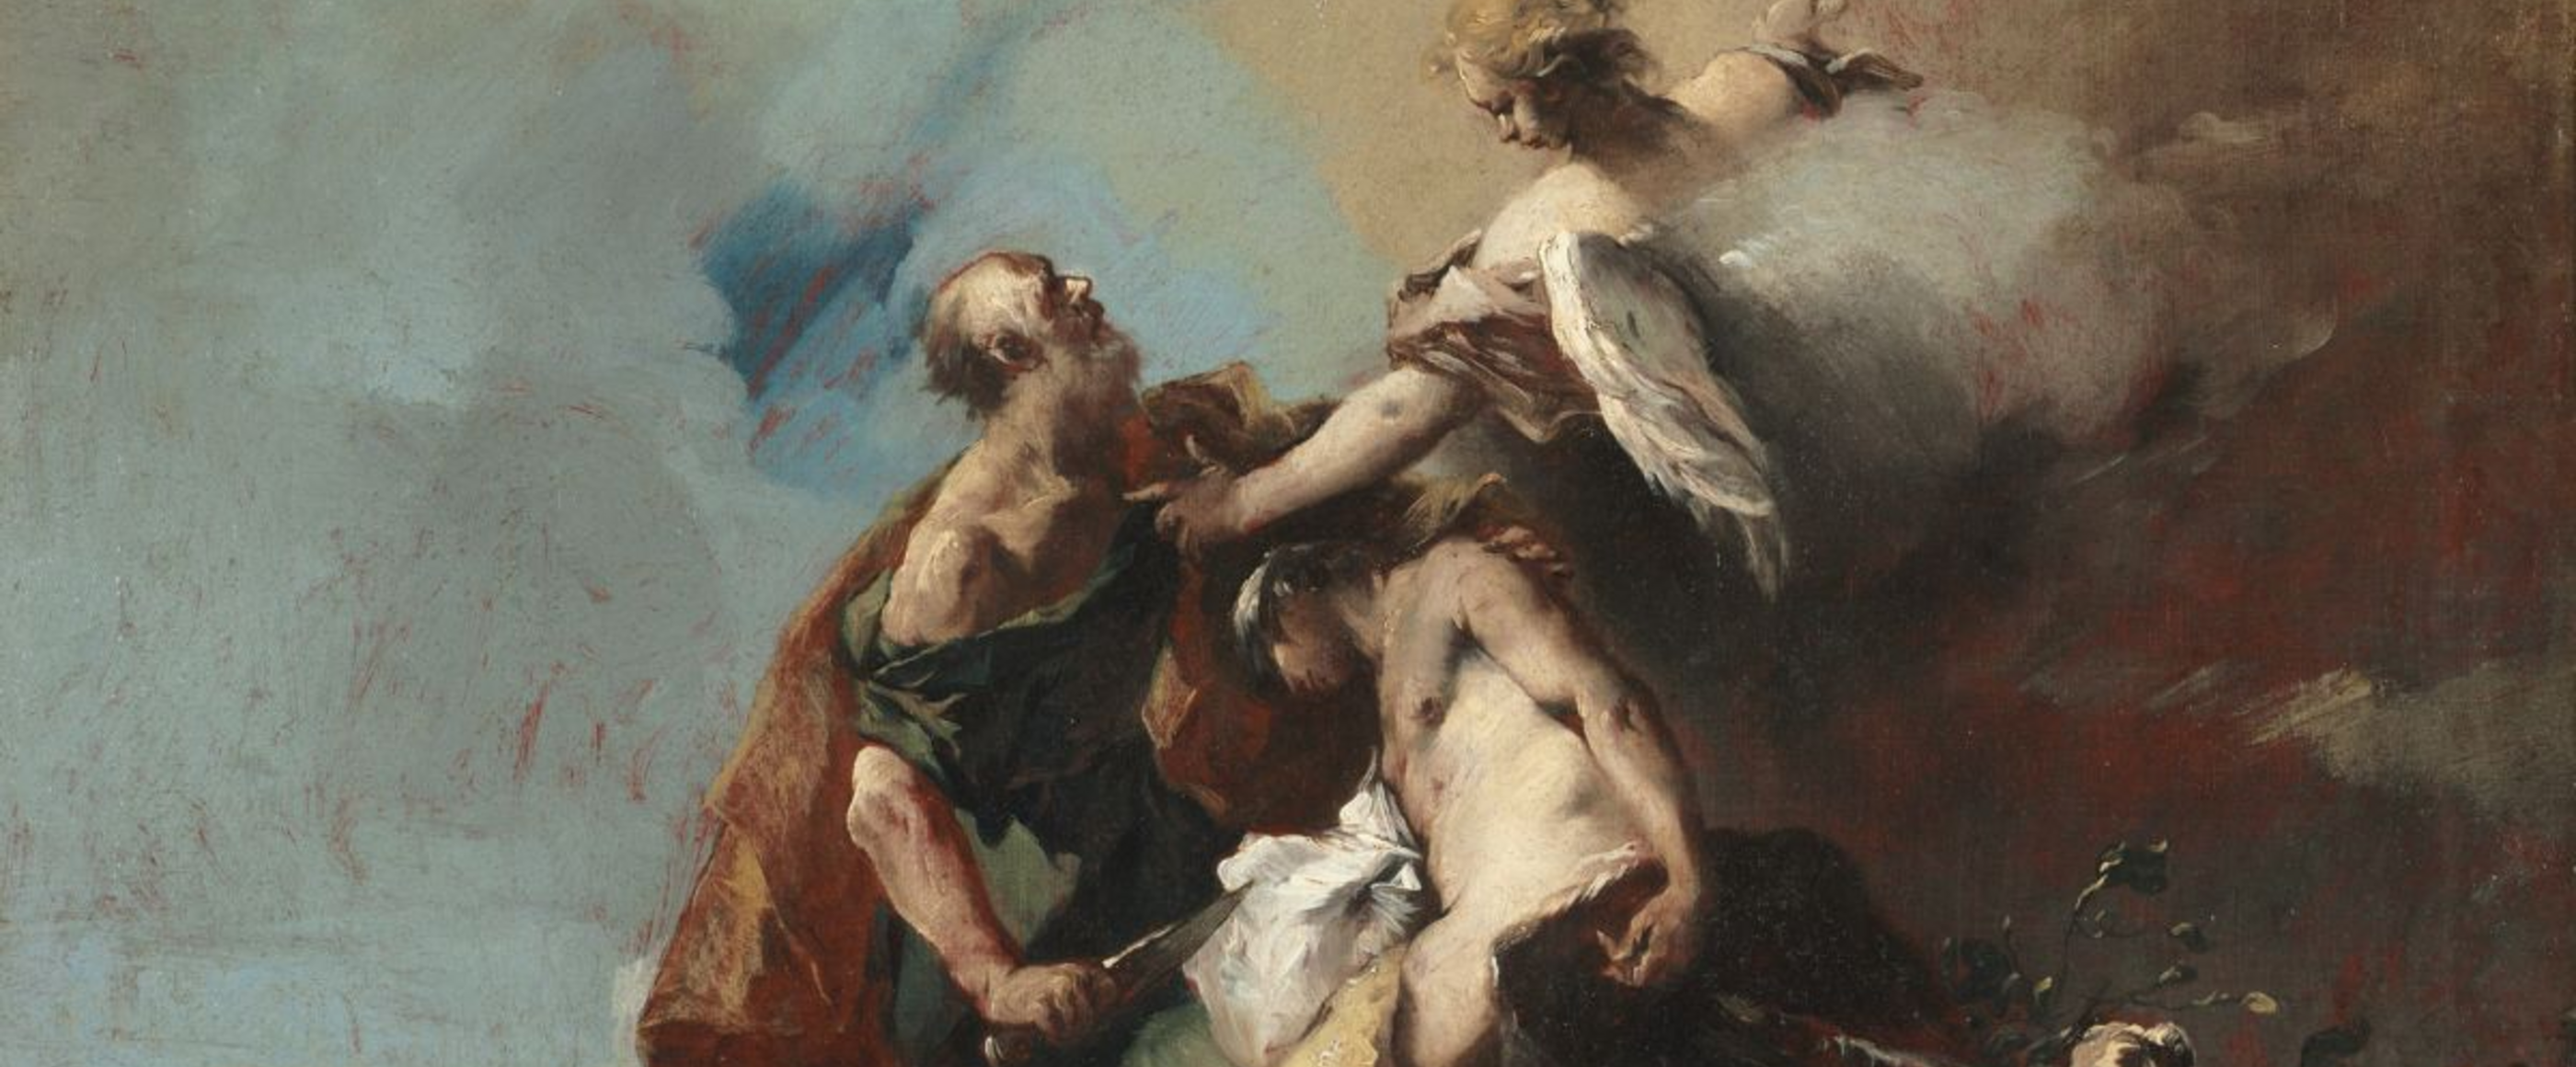 Ein altes Gemälde auf dem ein Engel zu sehen ist, der Abraham davon abhält Isaak zu töten. 